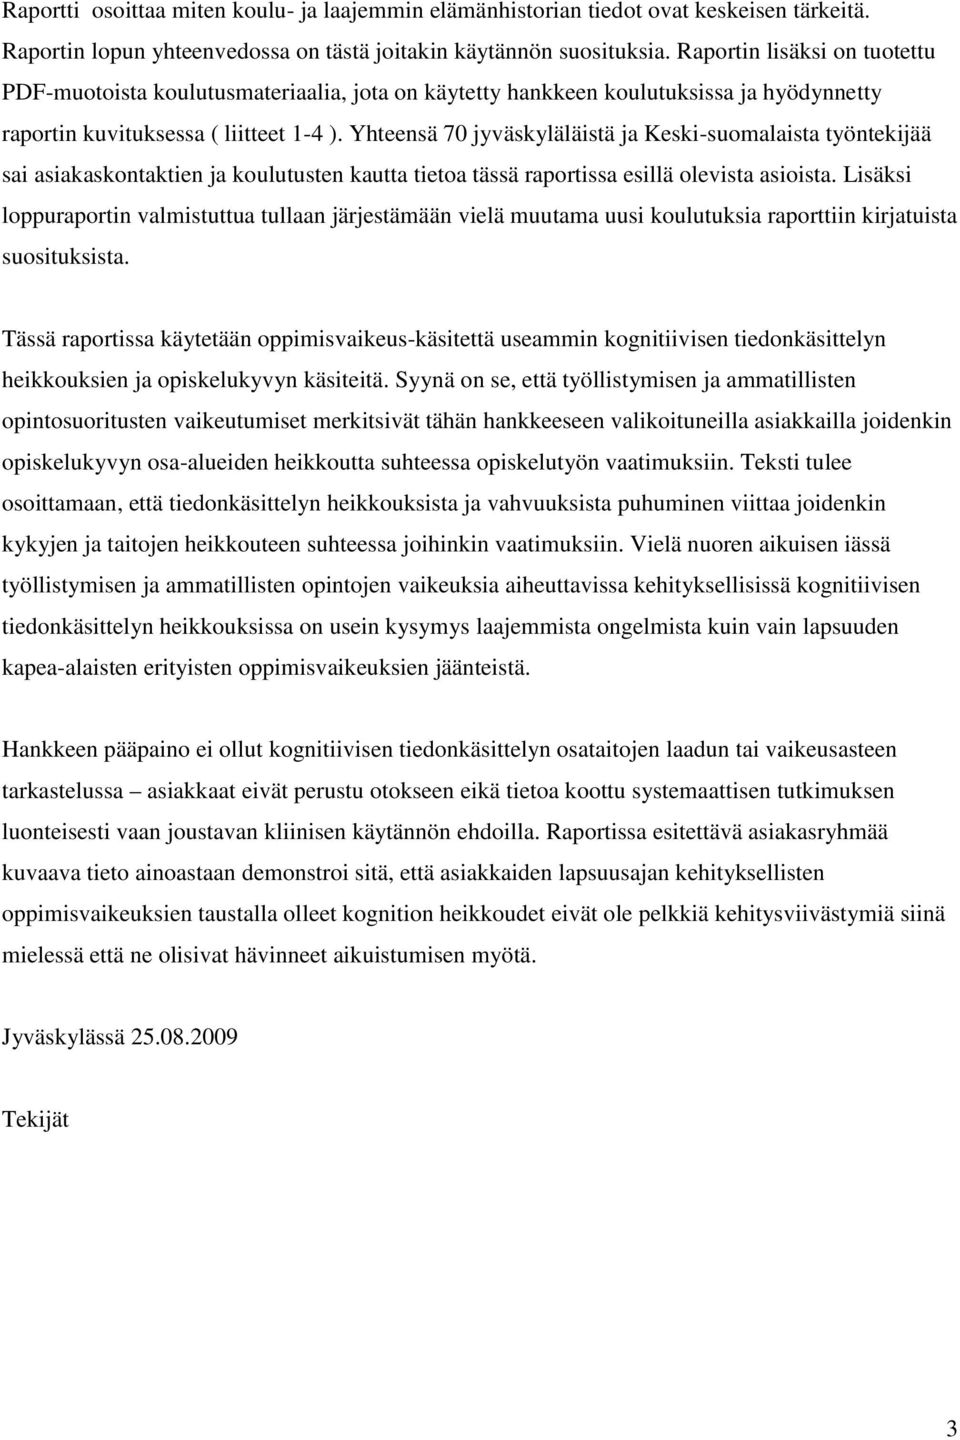 Yhteensä 70 jyväskyläläistä ja Keski-suomalaista työntekijää sai asiakaskontaktien ja koulutusten kautta tietoa tässä raportissa esillä olevista asioista.